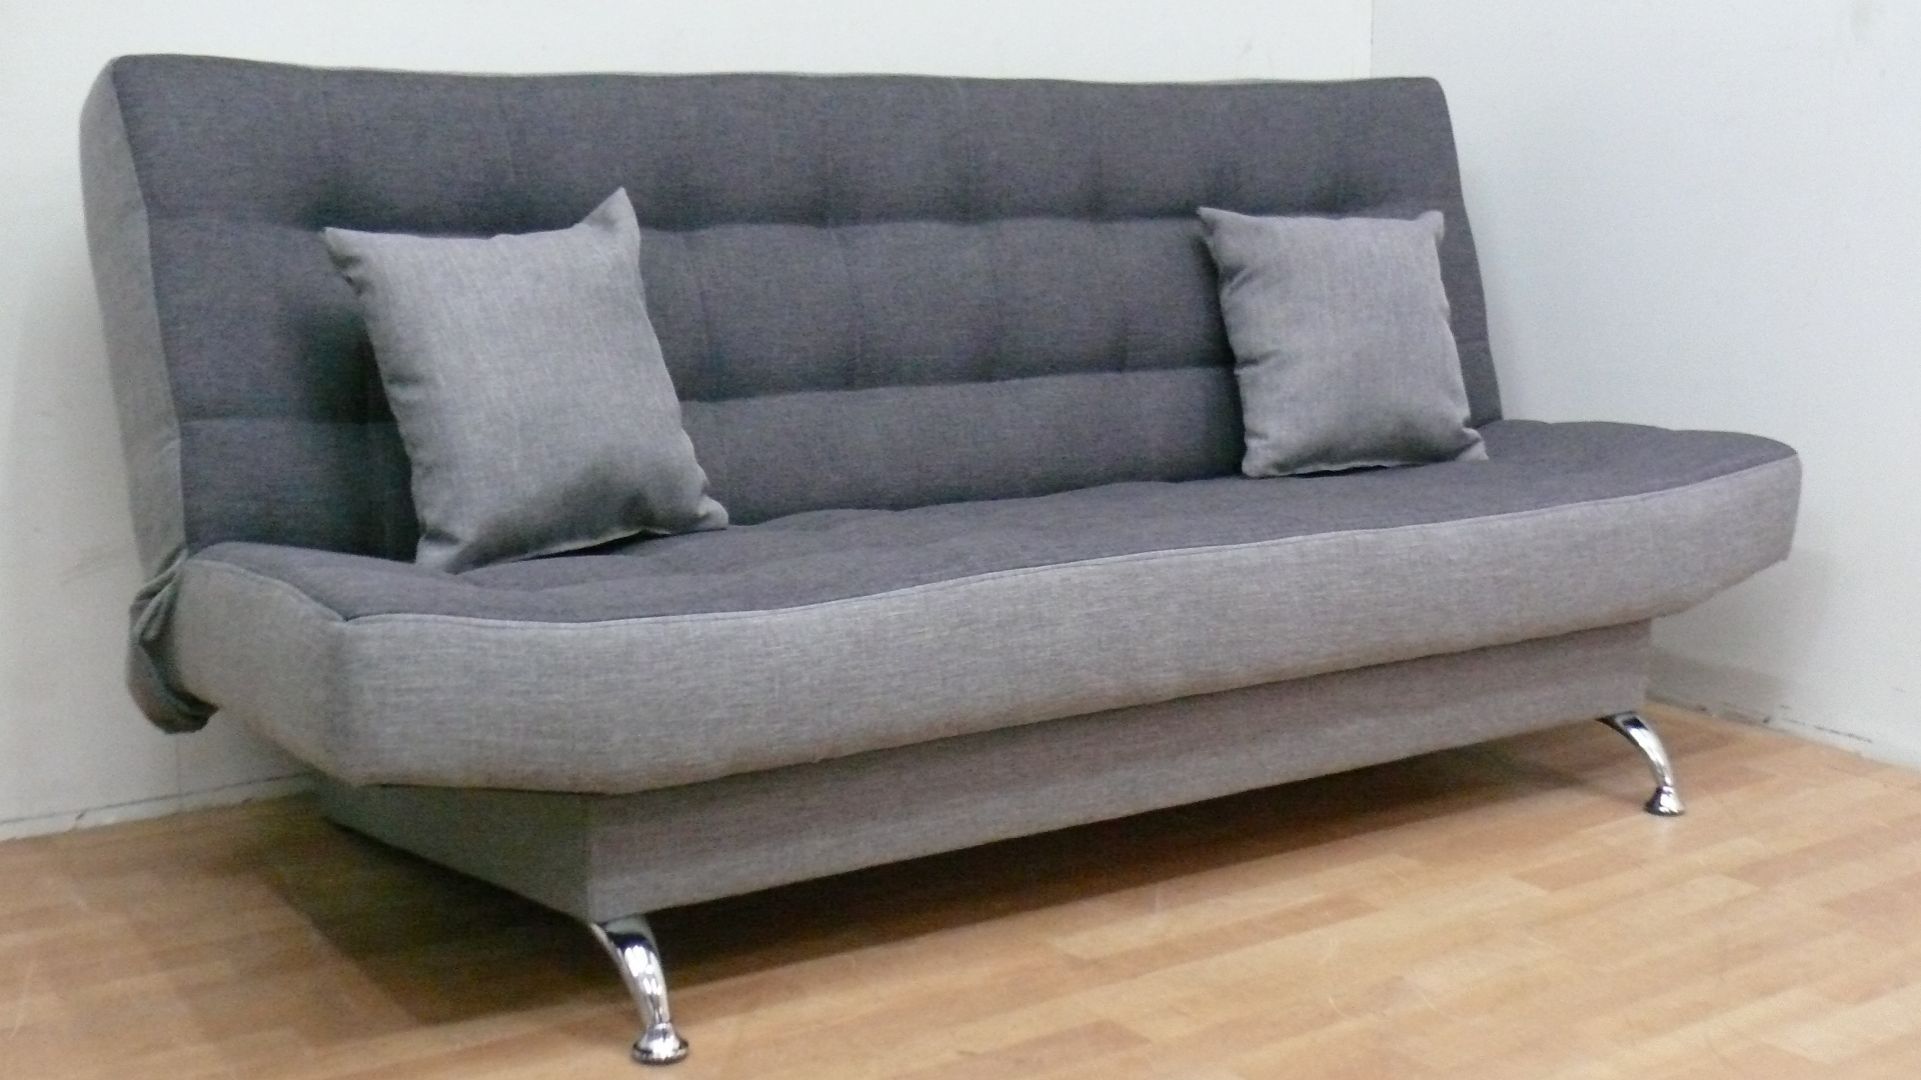 Nowa sofa kanapa funkcja spania wersalka tapczan łóżko